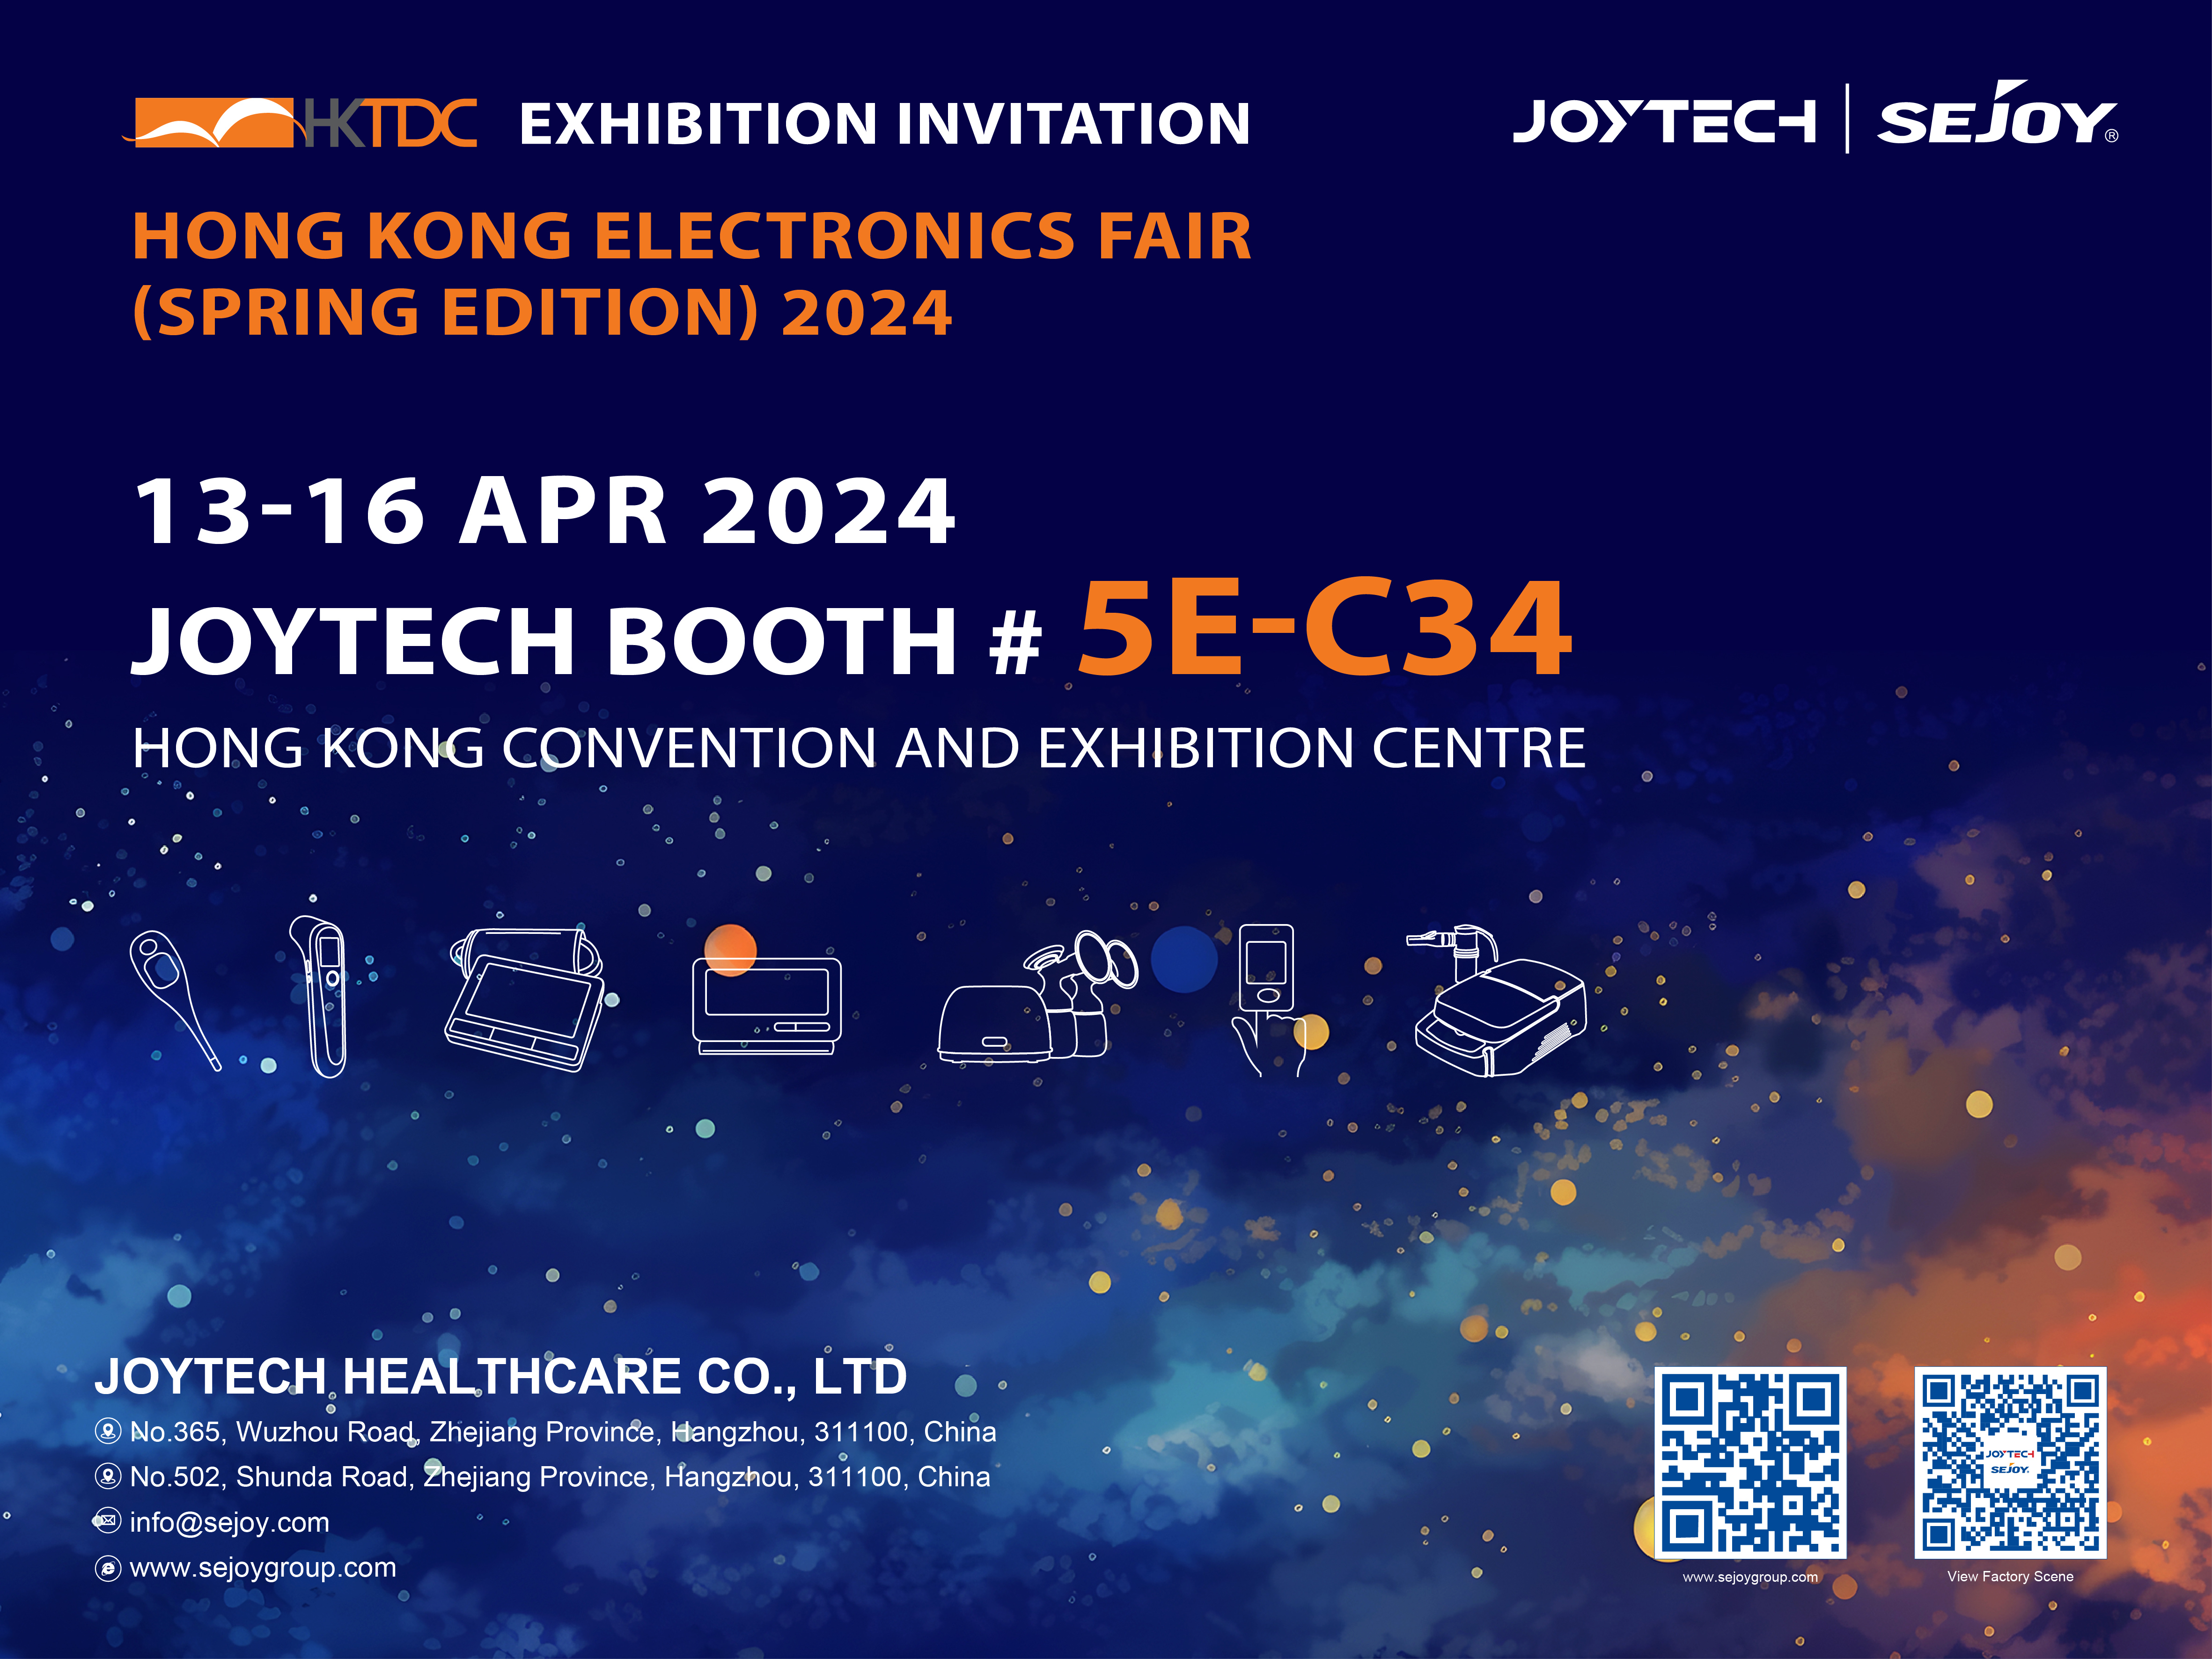 Приглашение познакомиться с нашими инновационными решениями для здравоохранения на выставке электроники в Гонконге